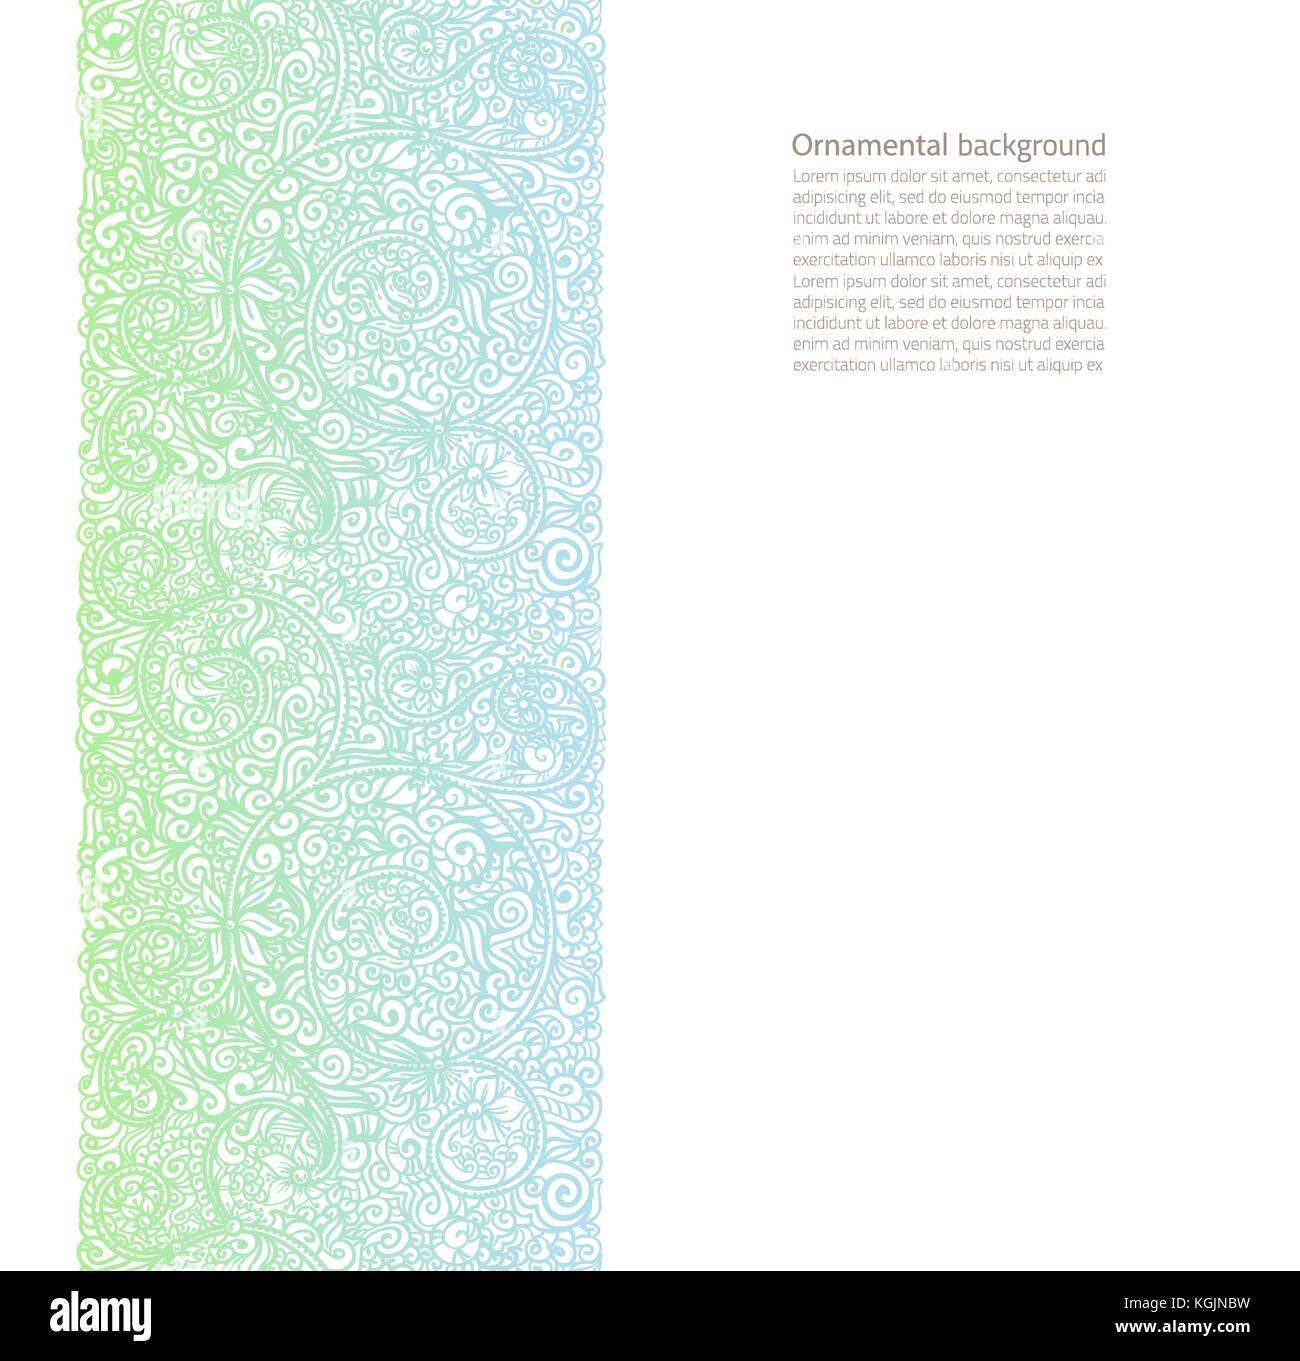 Vector background ornementé avec copie espace, lumière bleue et verte ornement isolé sur la page blanche Illustration de Vecteur